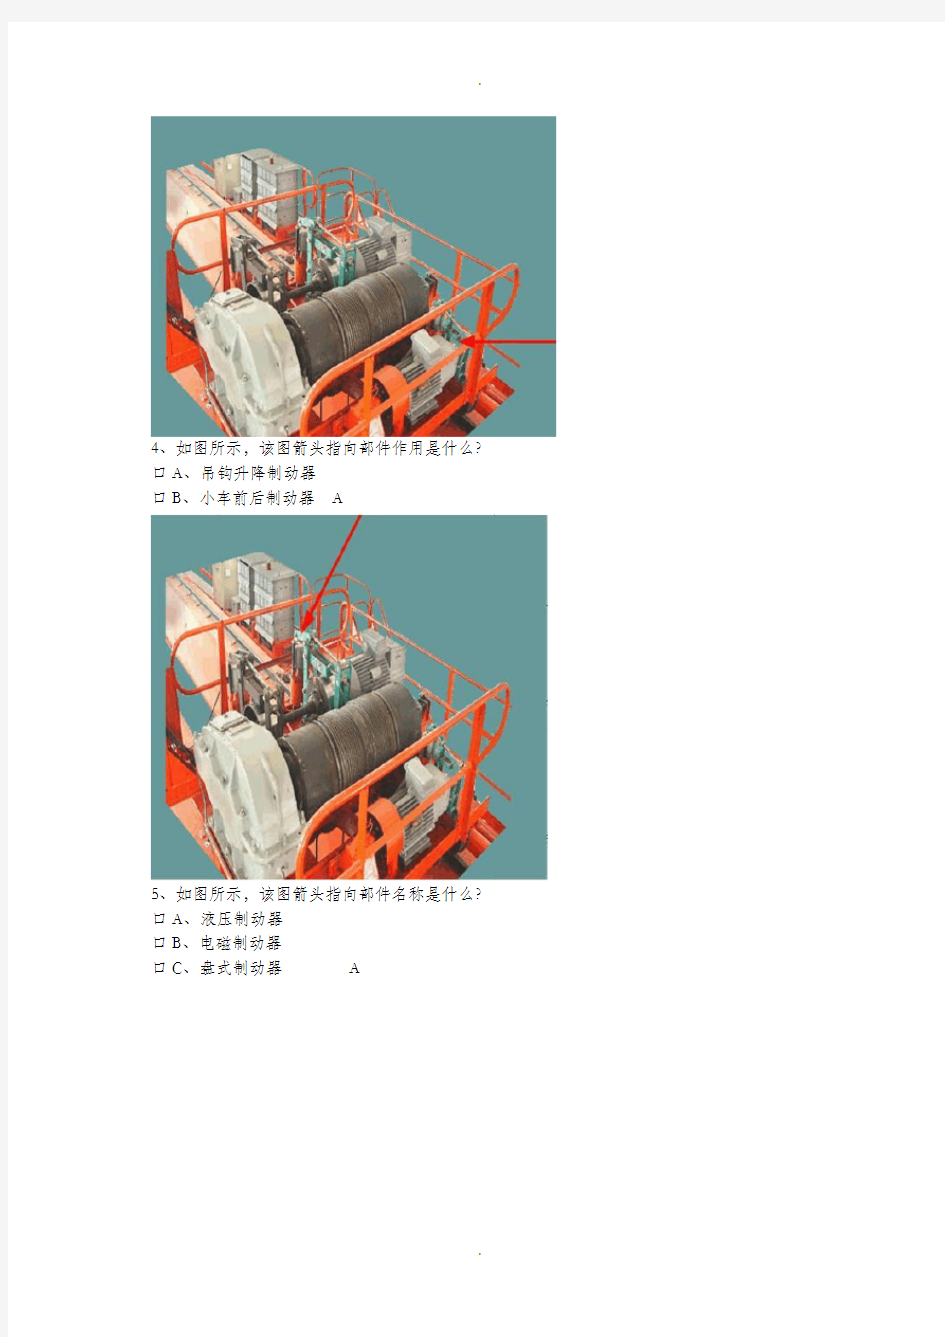 特种作业Q4桥式起重机试题库(图片类)讲解